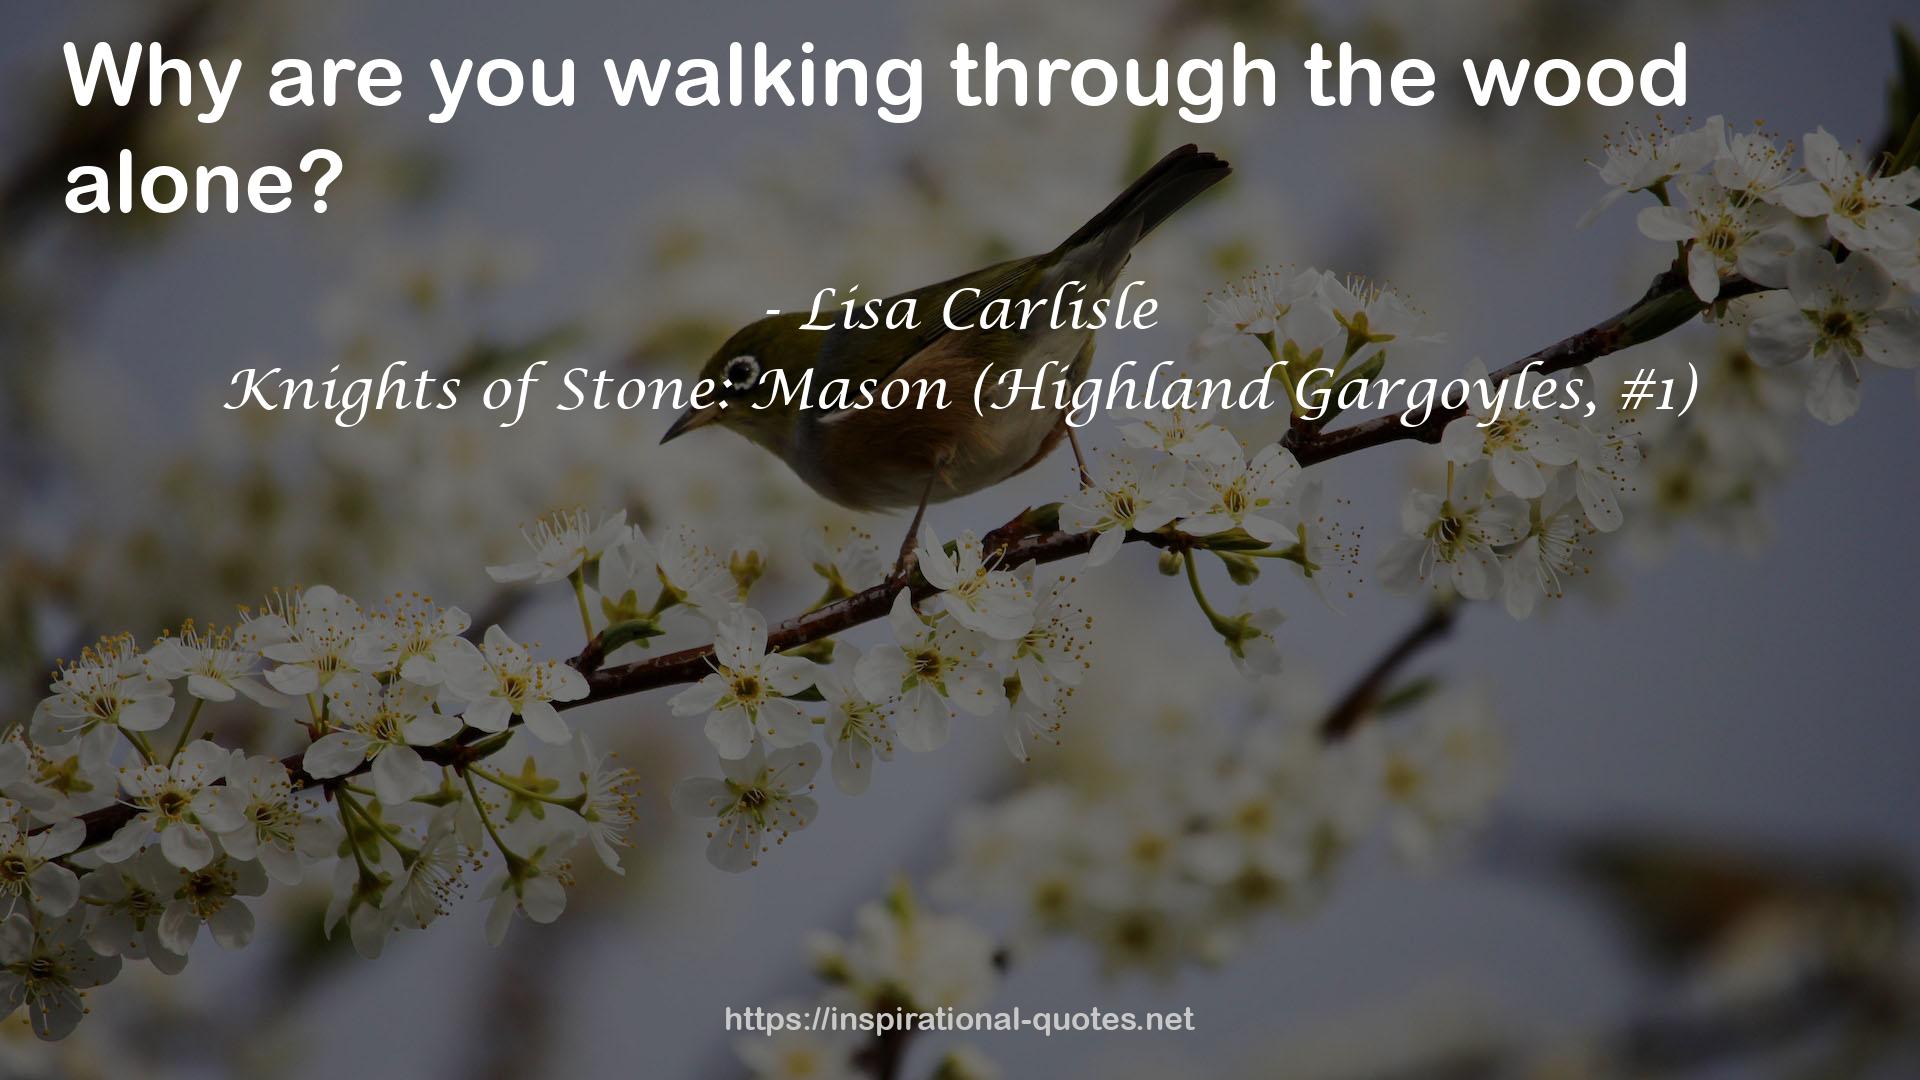 Knights of Stone: Mason (Highland Gargoyles, #1) QUOTES